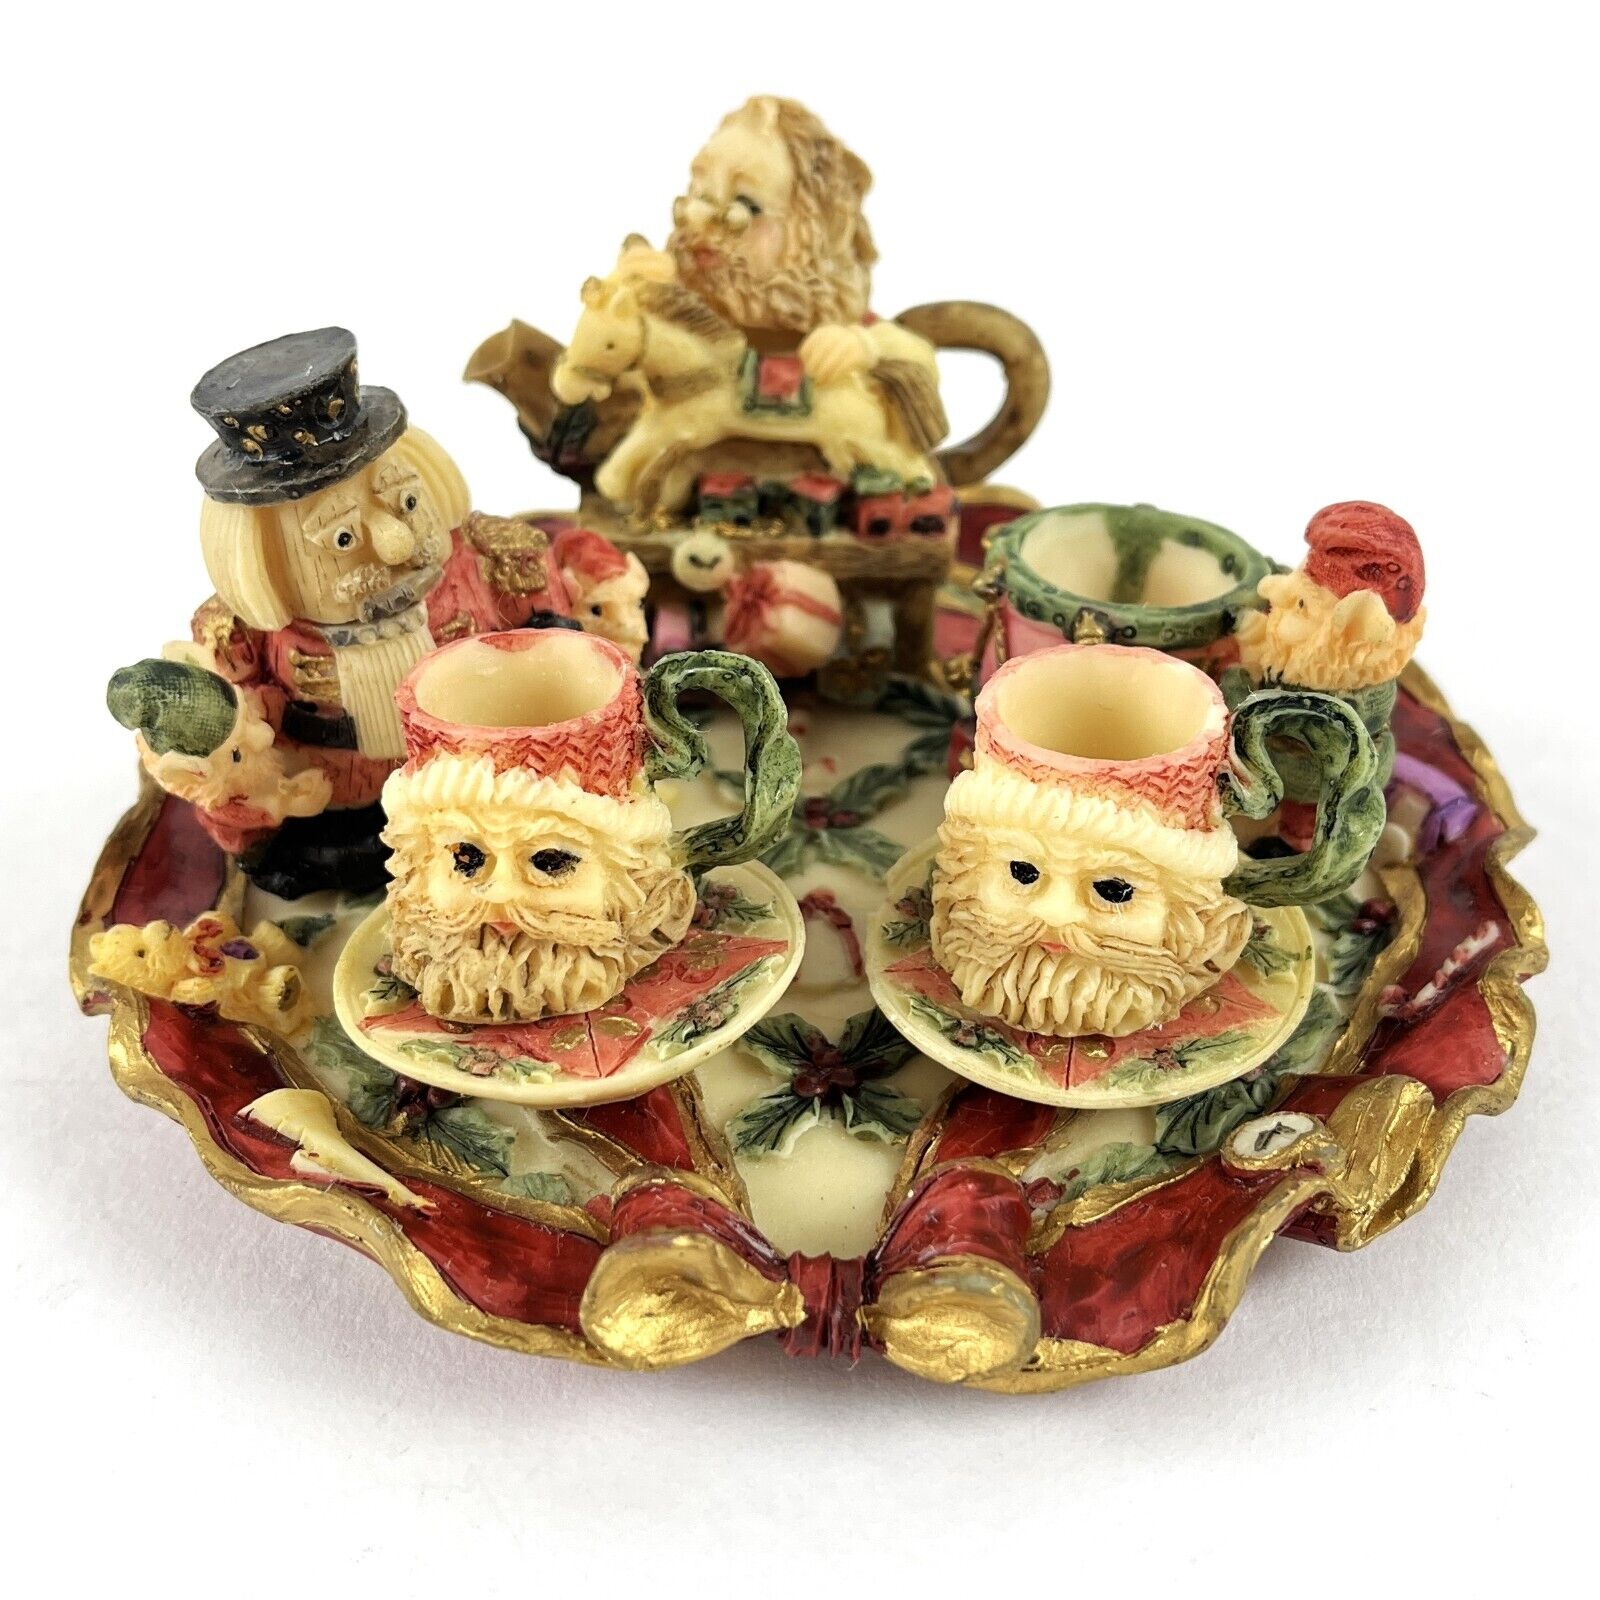 VTG 1995 Christmas Miniature Tea Set Santa Elves Workshop Toys Figurines